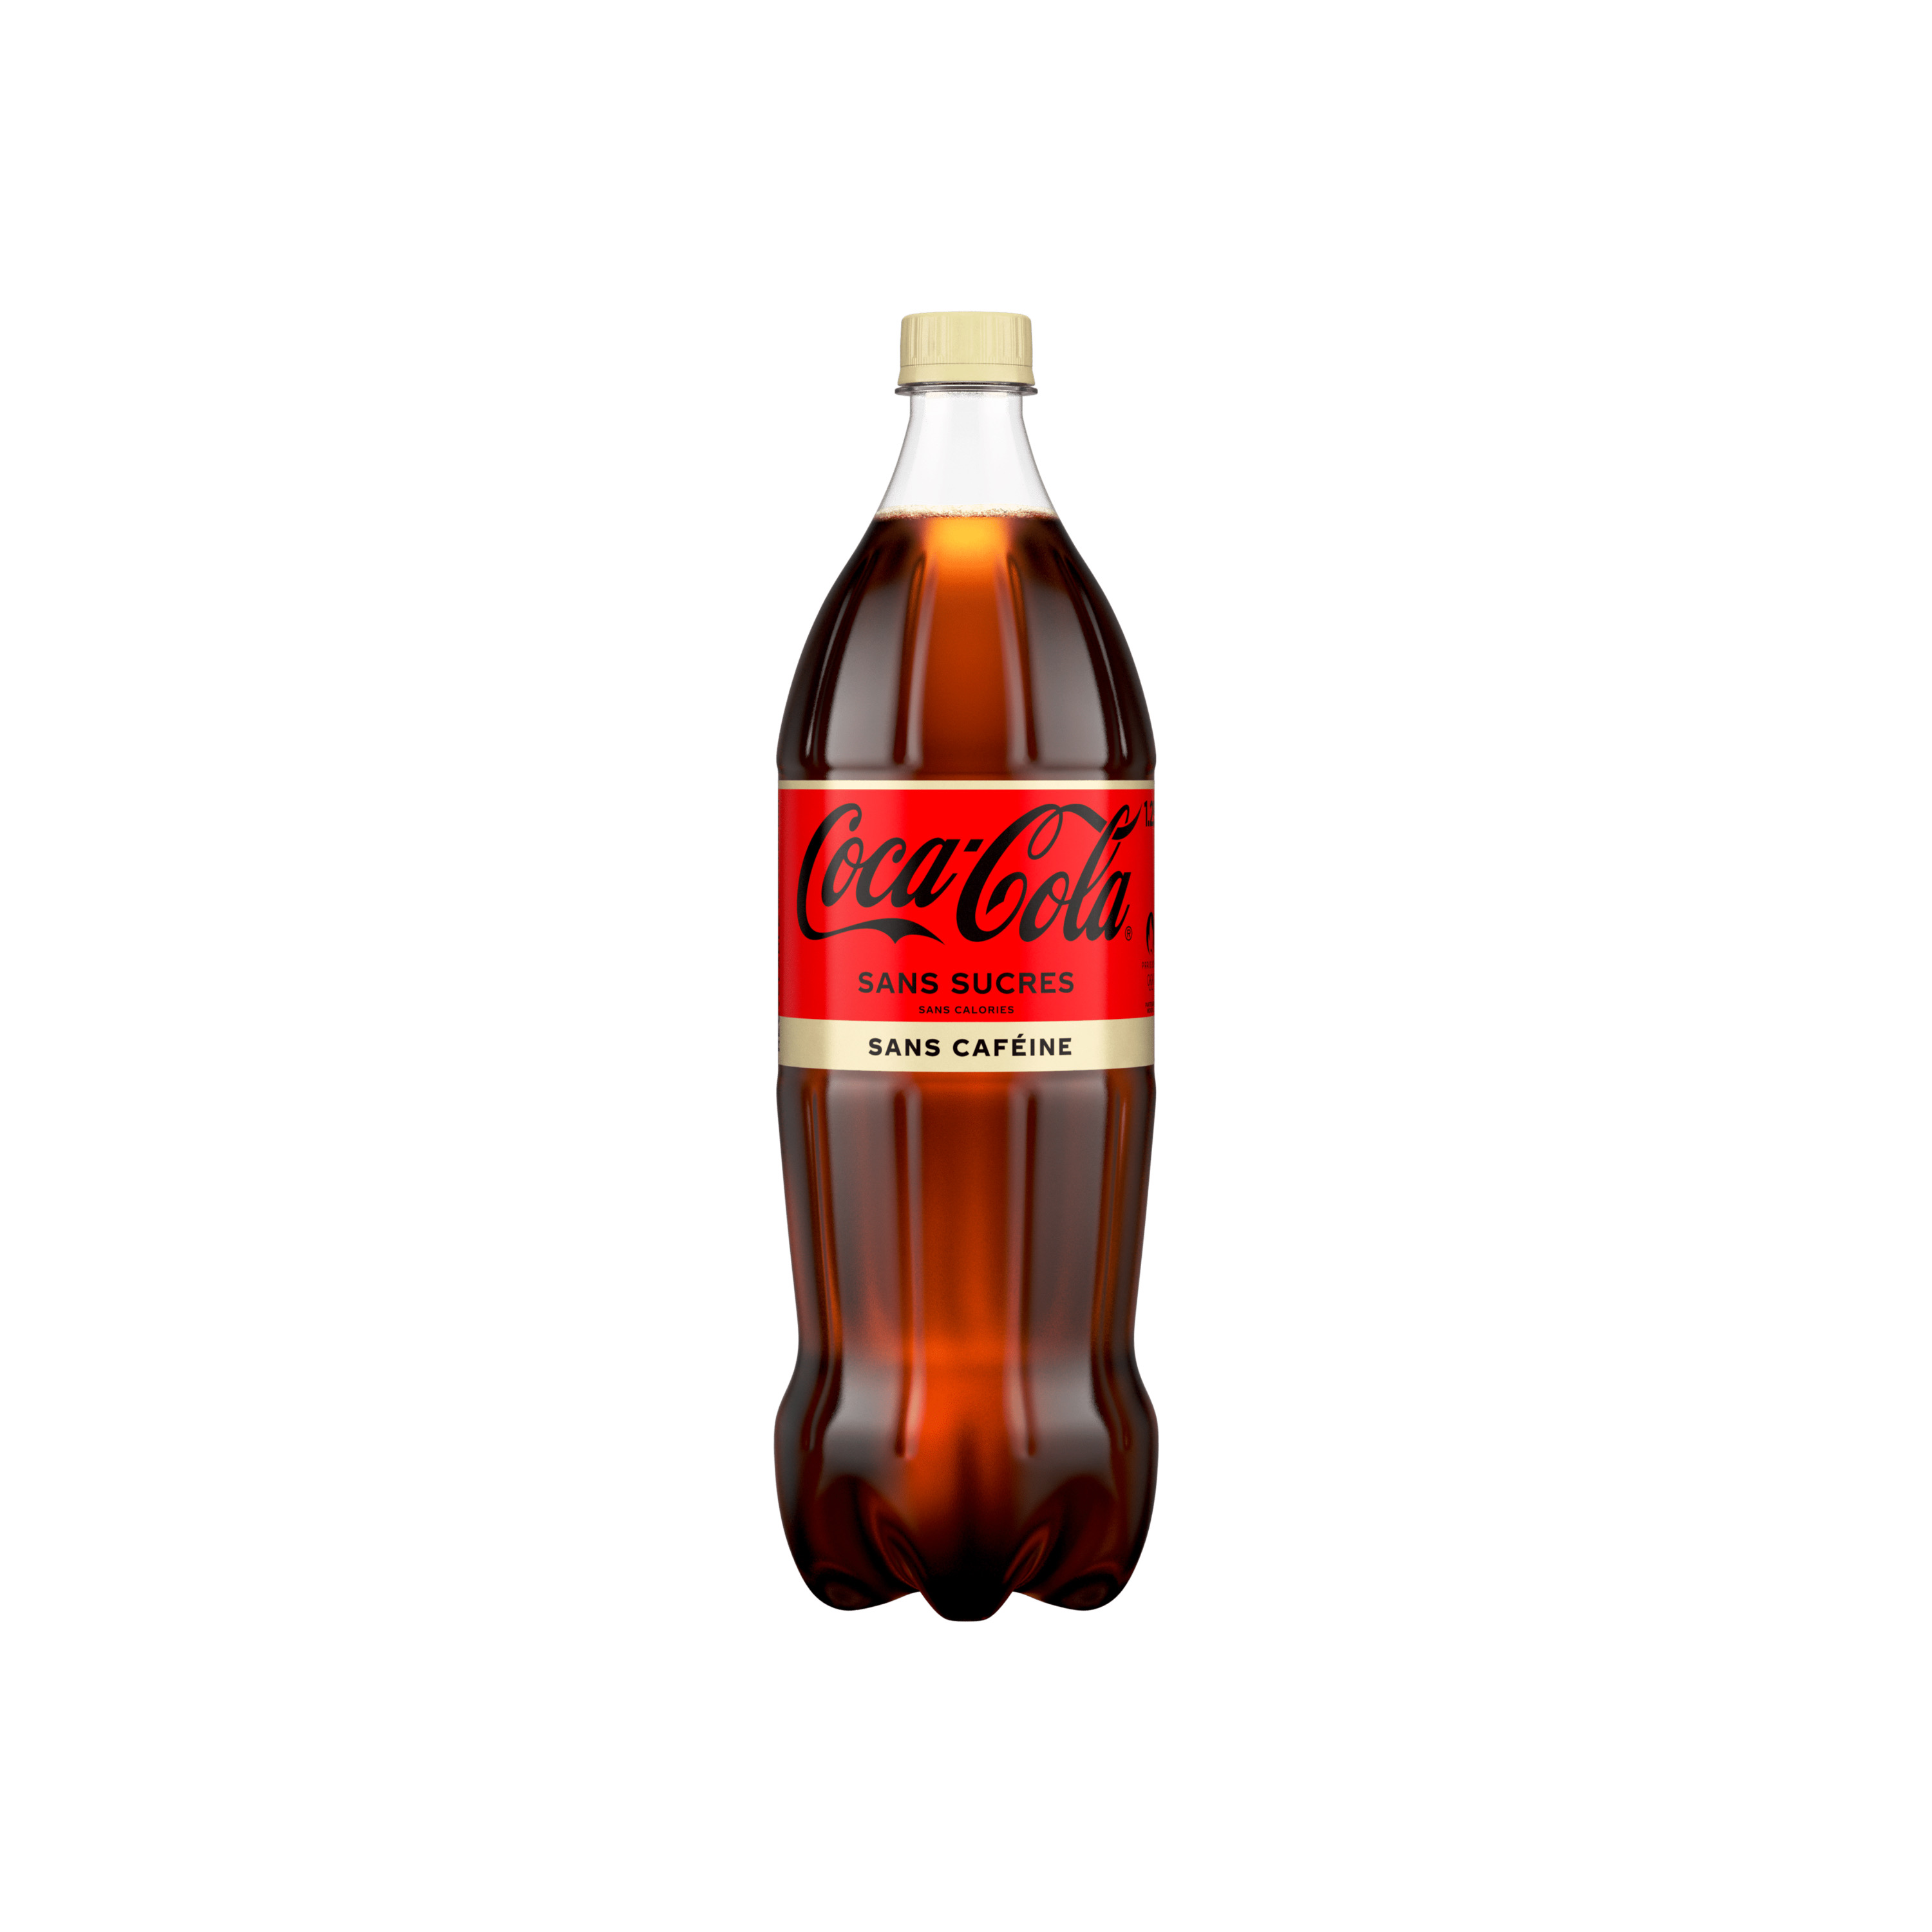 Bouteille de Coca-Cola sans sucres sans caféine